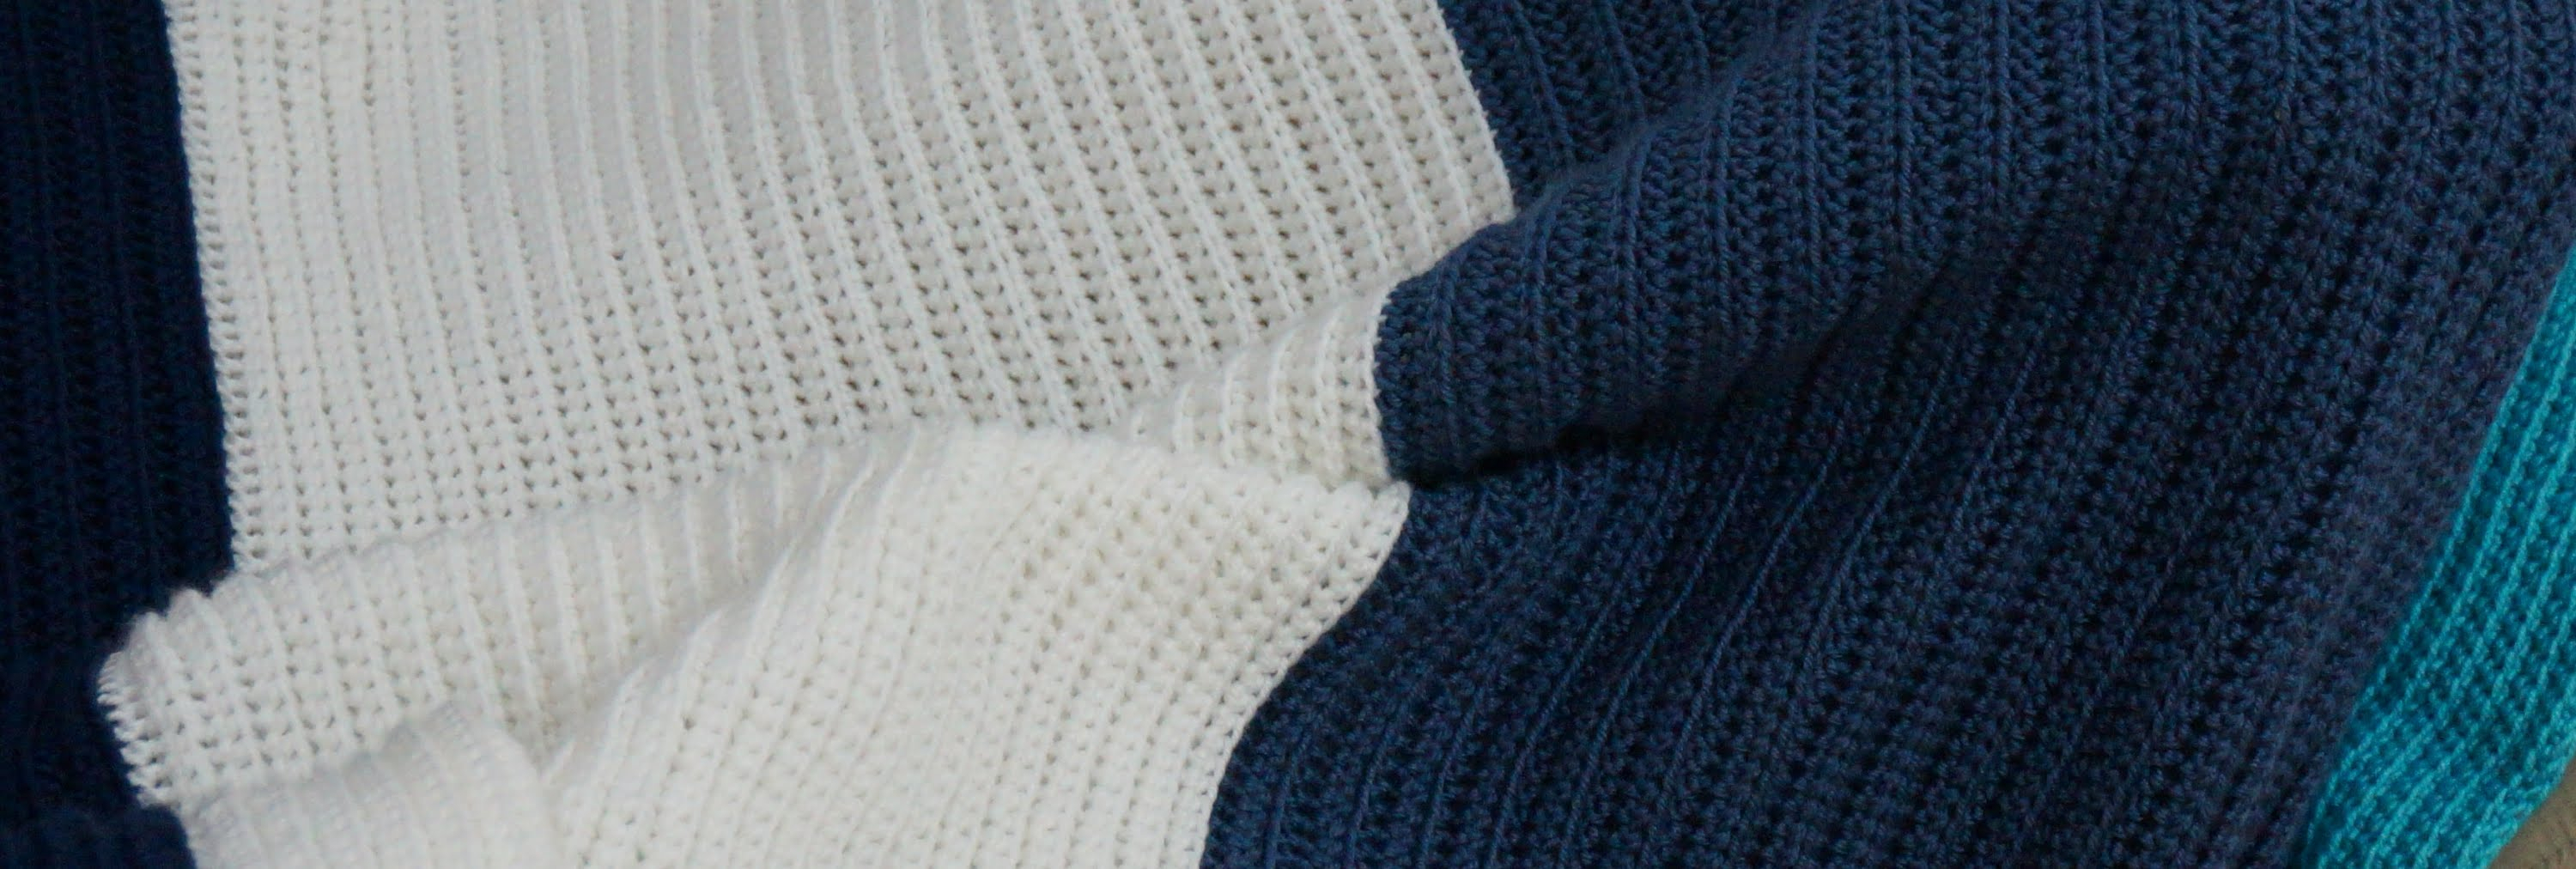 Crochet Blanket Pattern For Beginners Knitting Patterns Blanket Crochet With Me Crochet Blanket Pattern